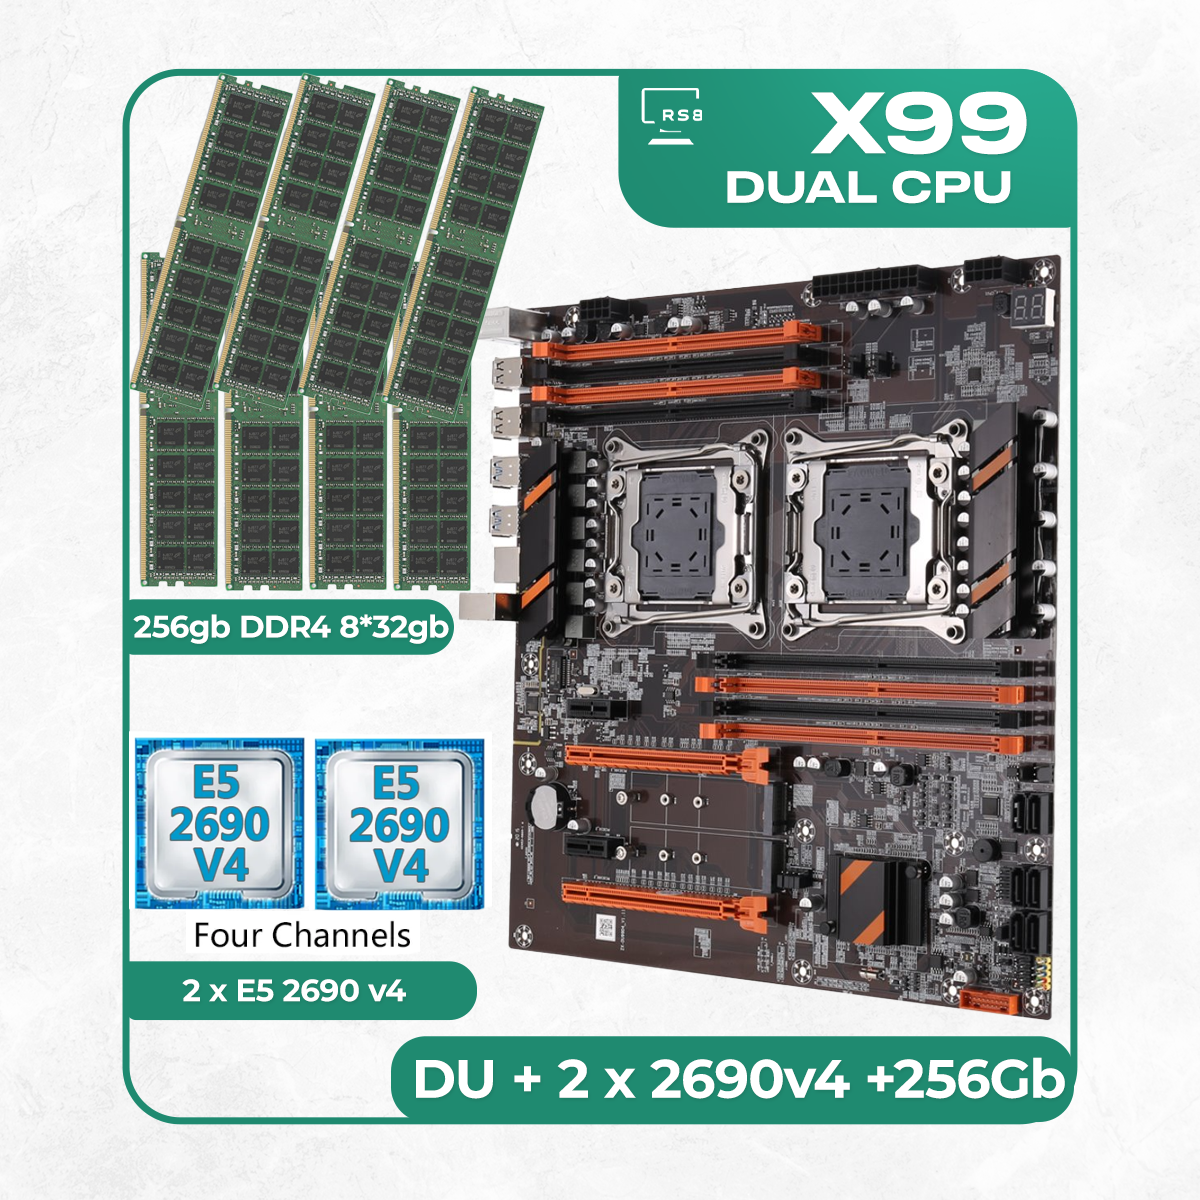 Комплект материнской платы X99: ZX-DU99D4 + 2 x Xeon E5 2690v4 + DDR4 256Гб 8х32Гб